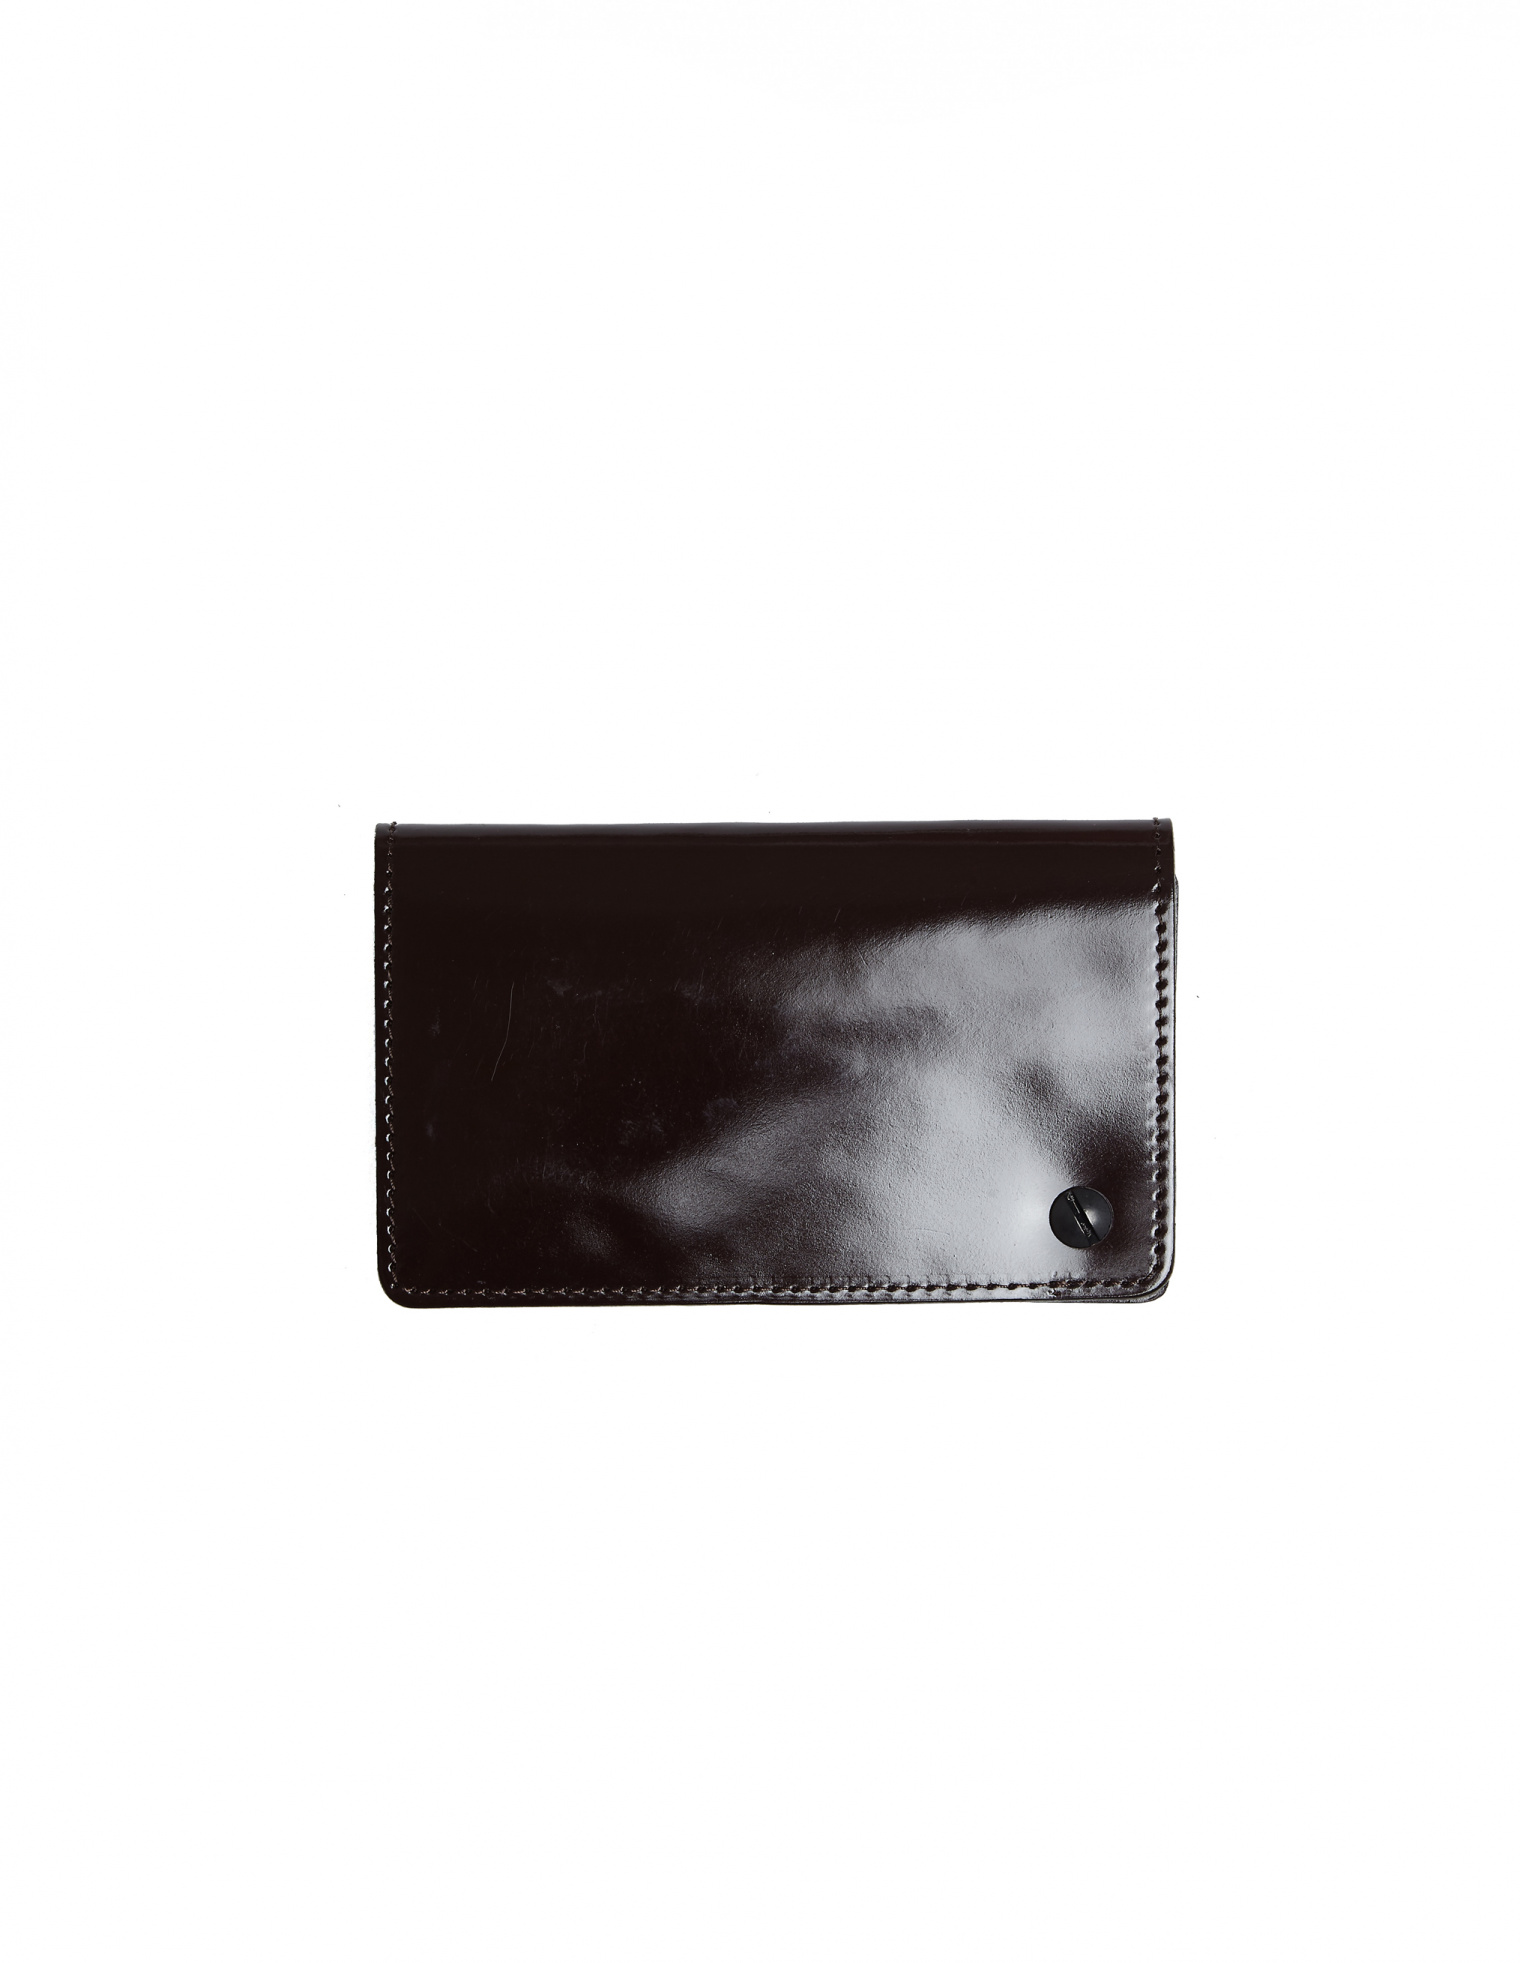 Yohji Yamamoto Polished Leather Cardholder